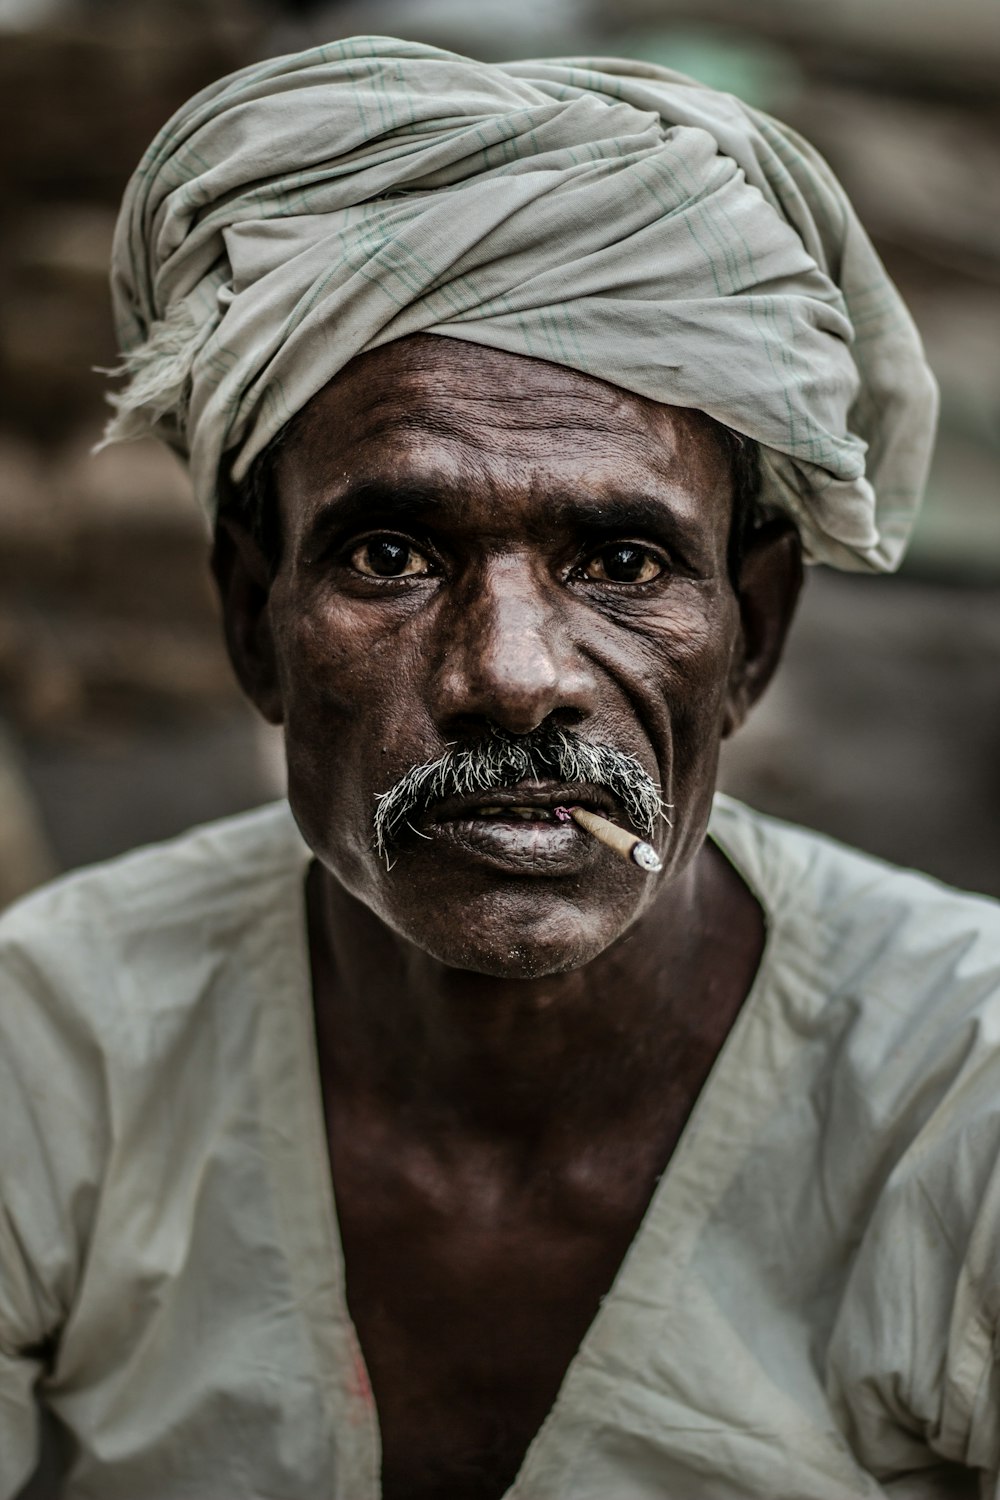 Mann mit grauem Turban raucht Zigarette in Nahaufnahme